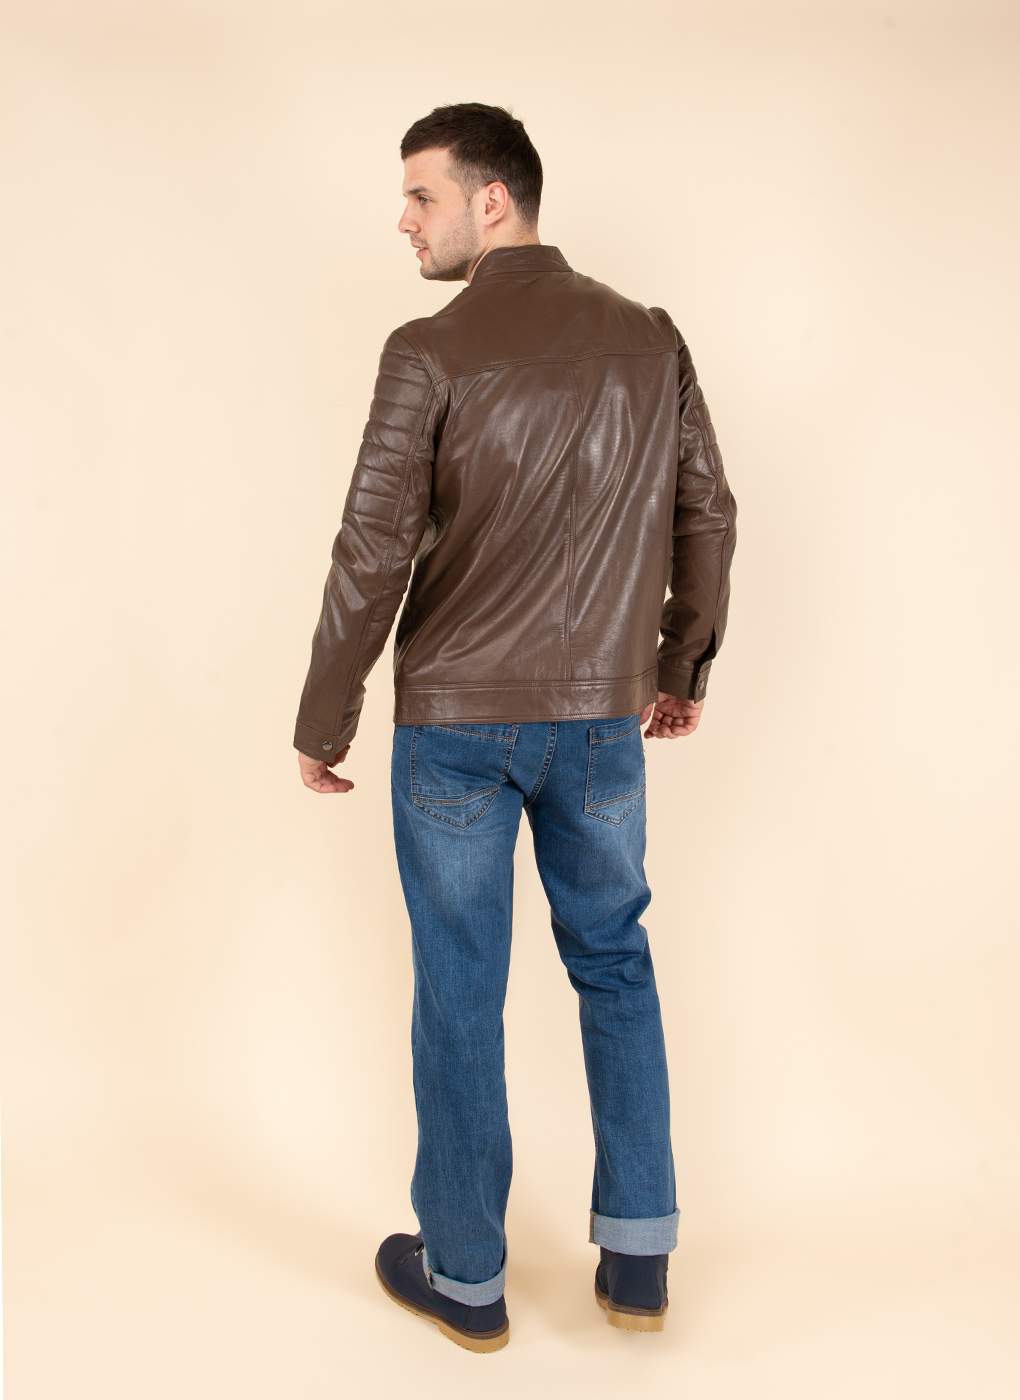 Кожаная куртка мужская Каляев 51748 коричневая 48 RU